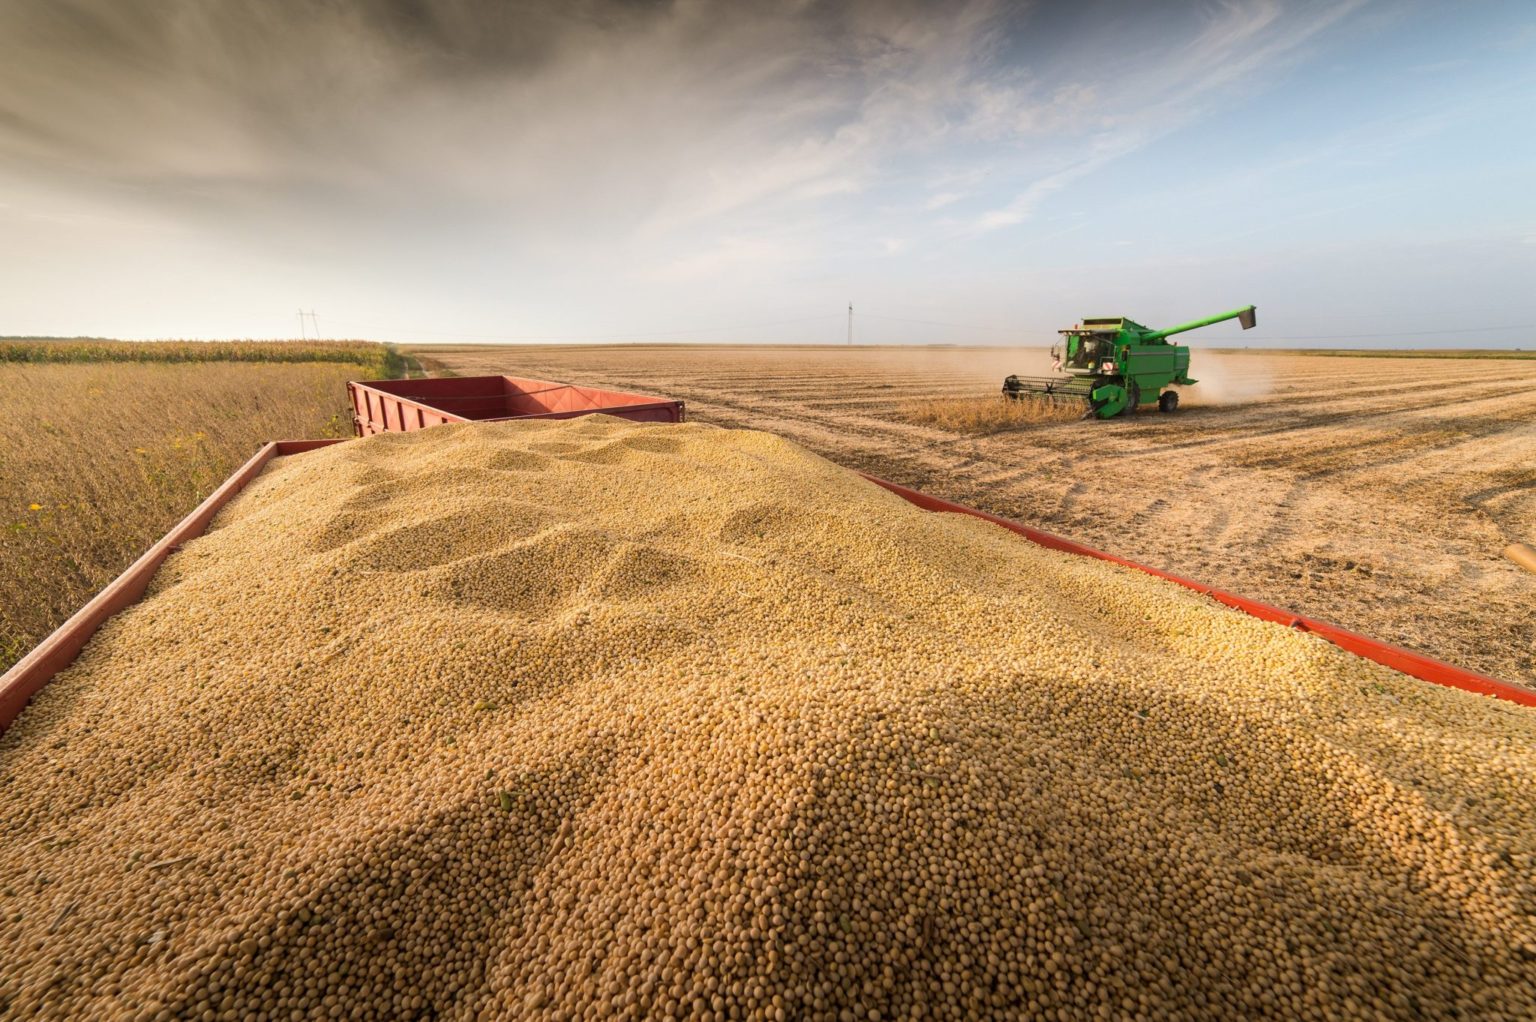 Algérie-Récolte de blé : Cette fois c’est la BBC qui réplique aux médias marocains (VIDEO)